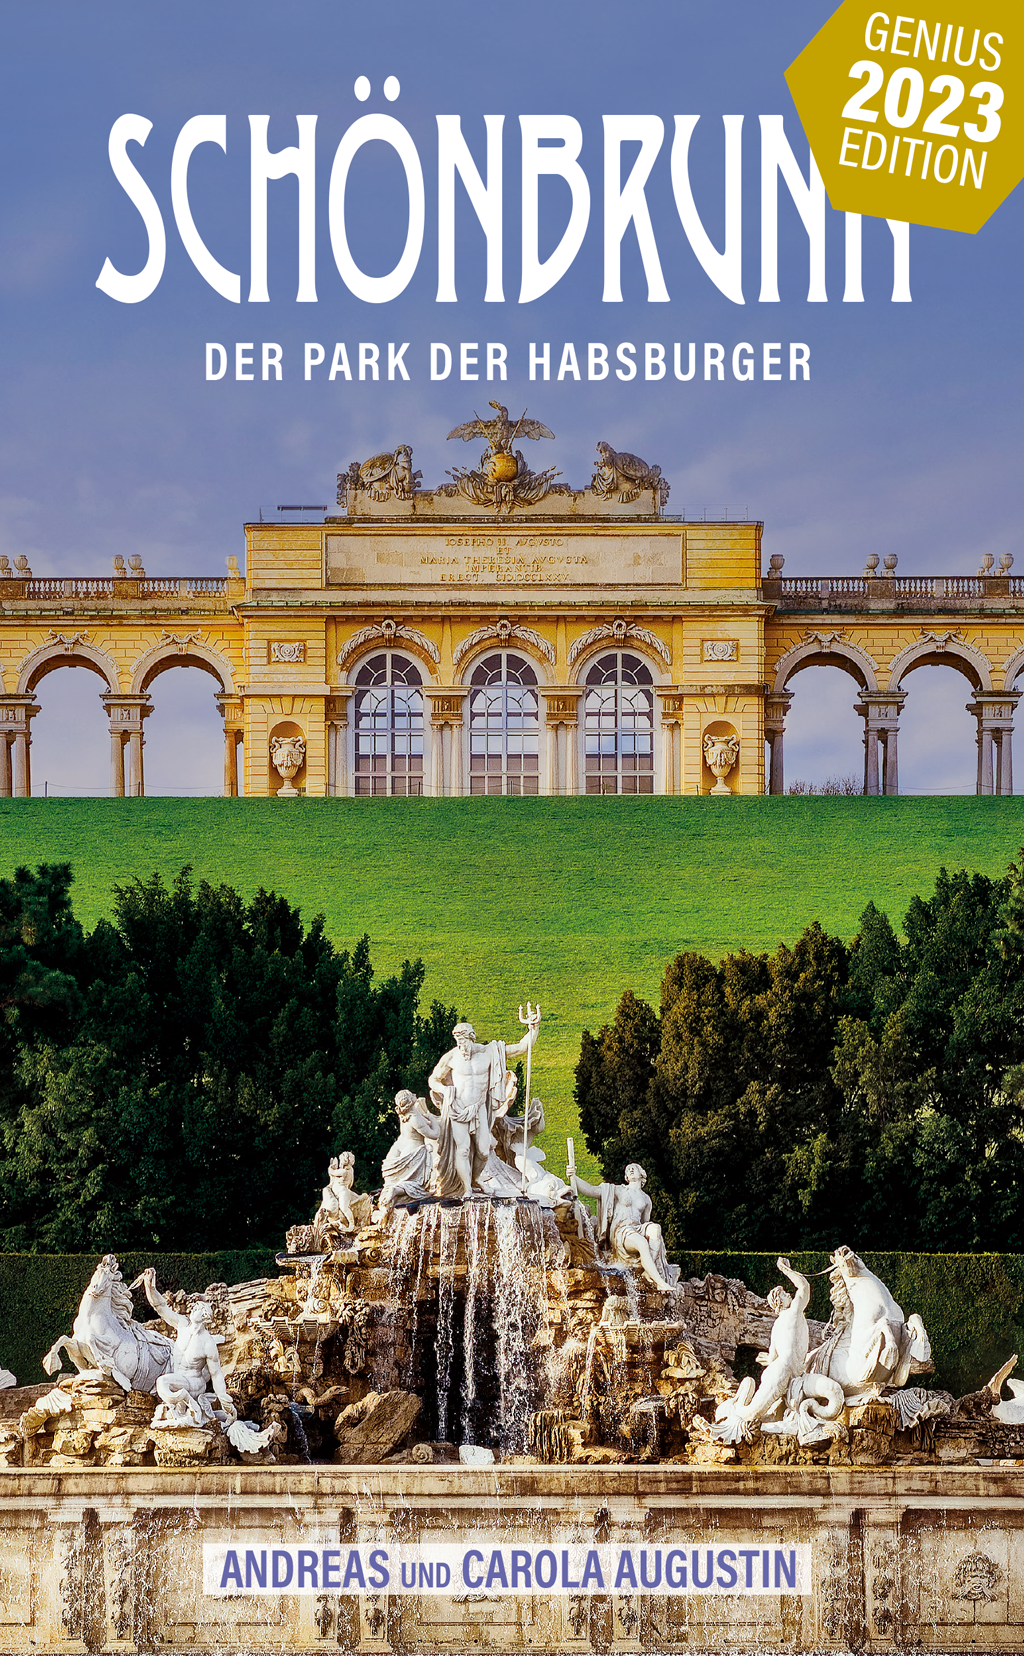 Schönbrunn — Der Park der Habsburger